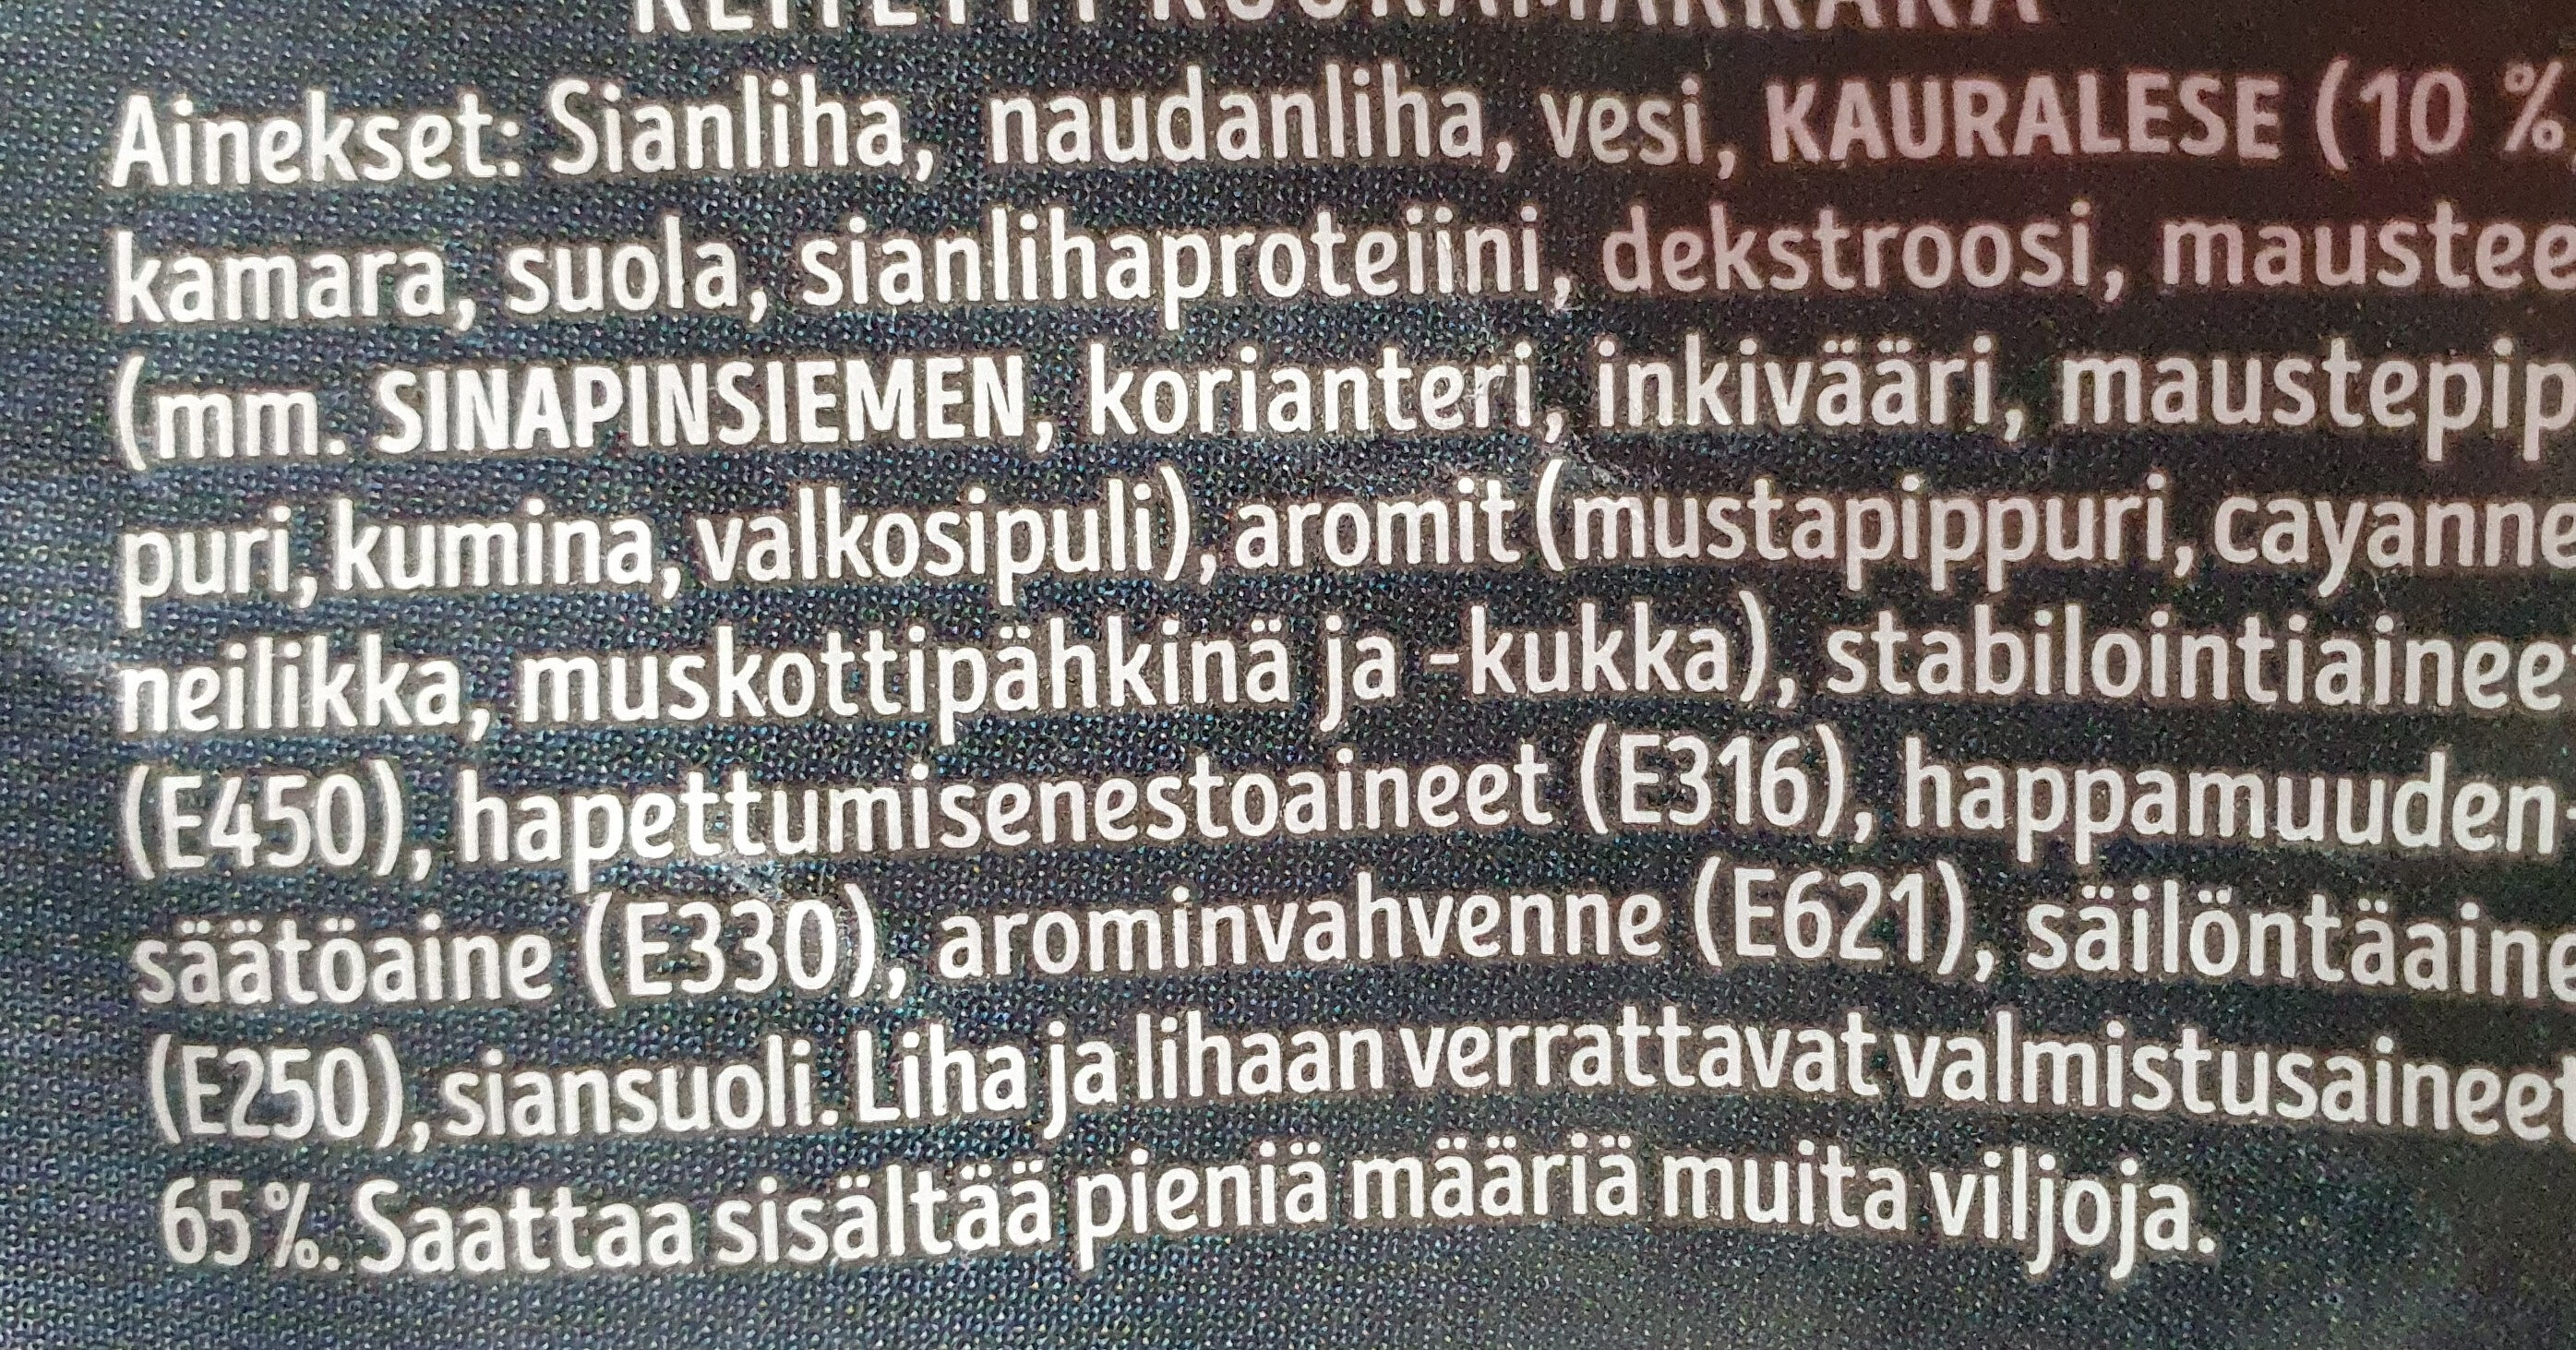 Kauralenkki - Ainesosat